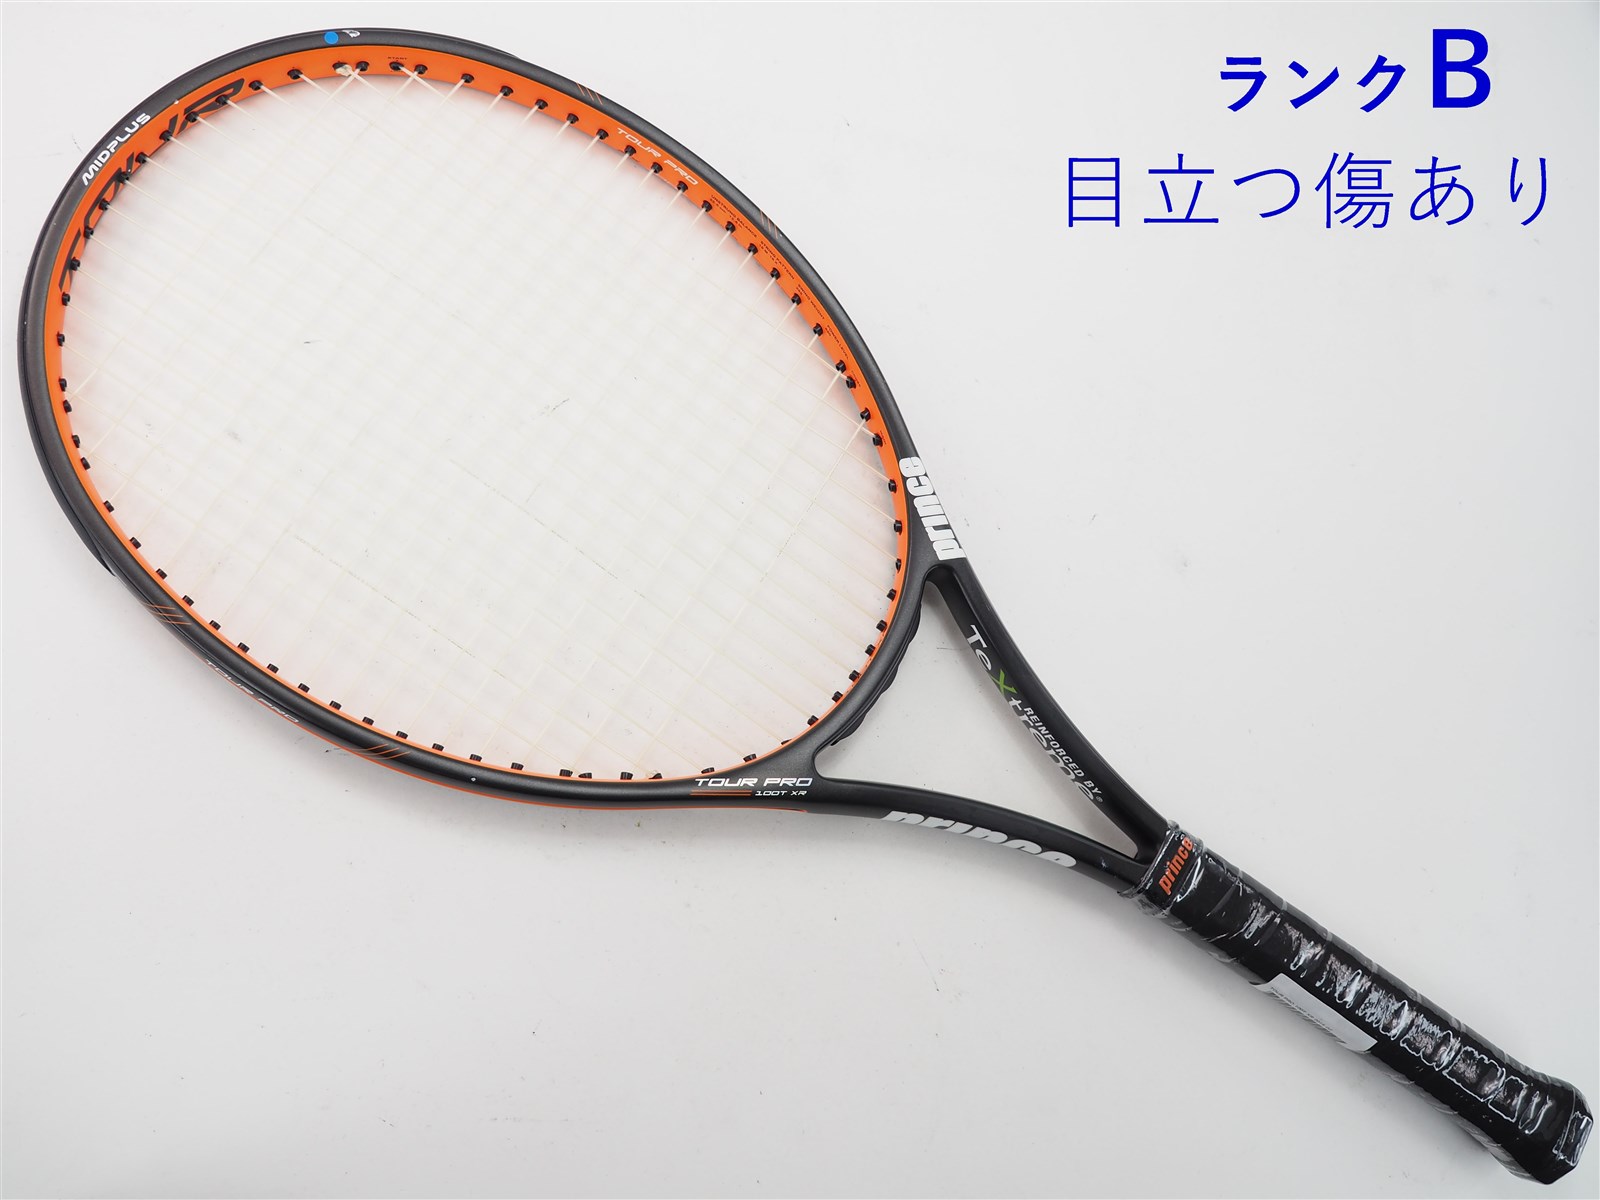 テニスラケット プリンス ツアー プロ 100ティー エックスアール 2015